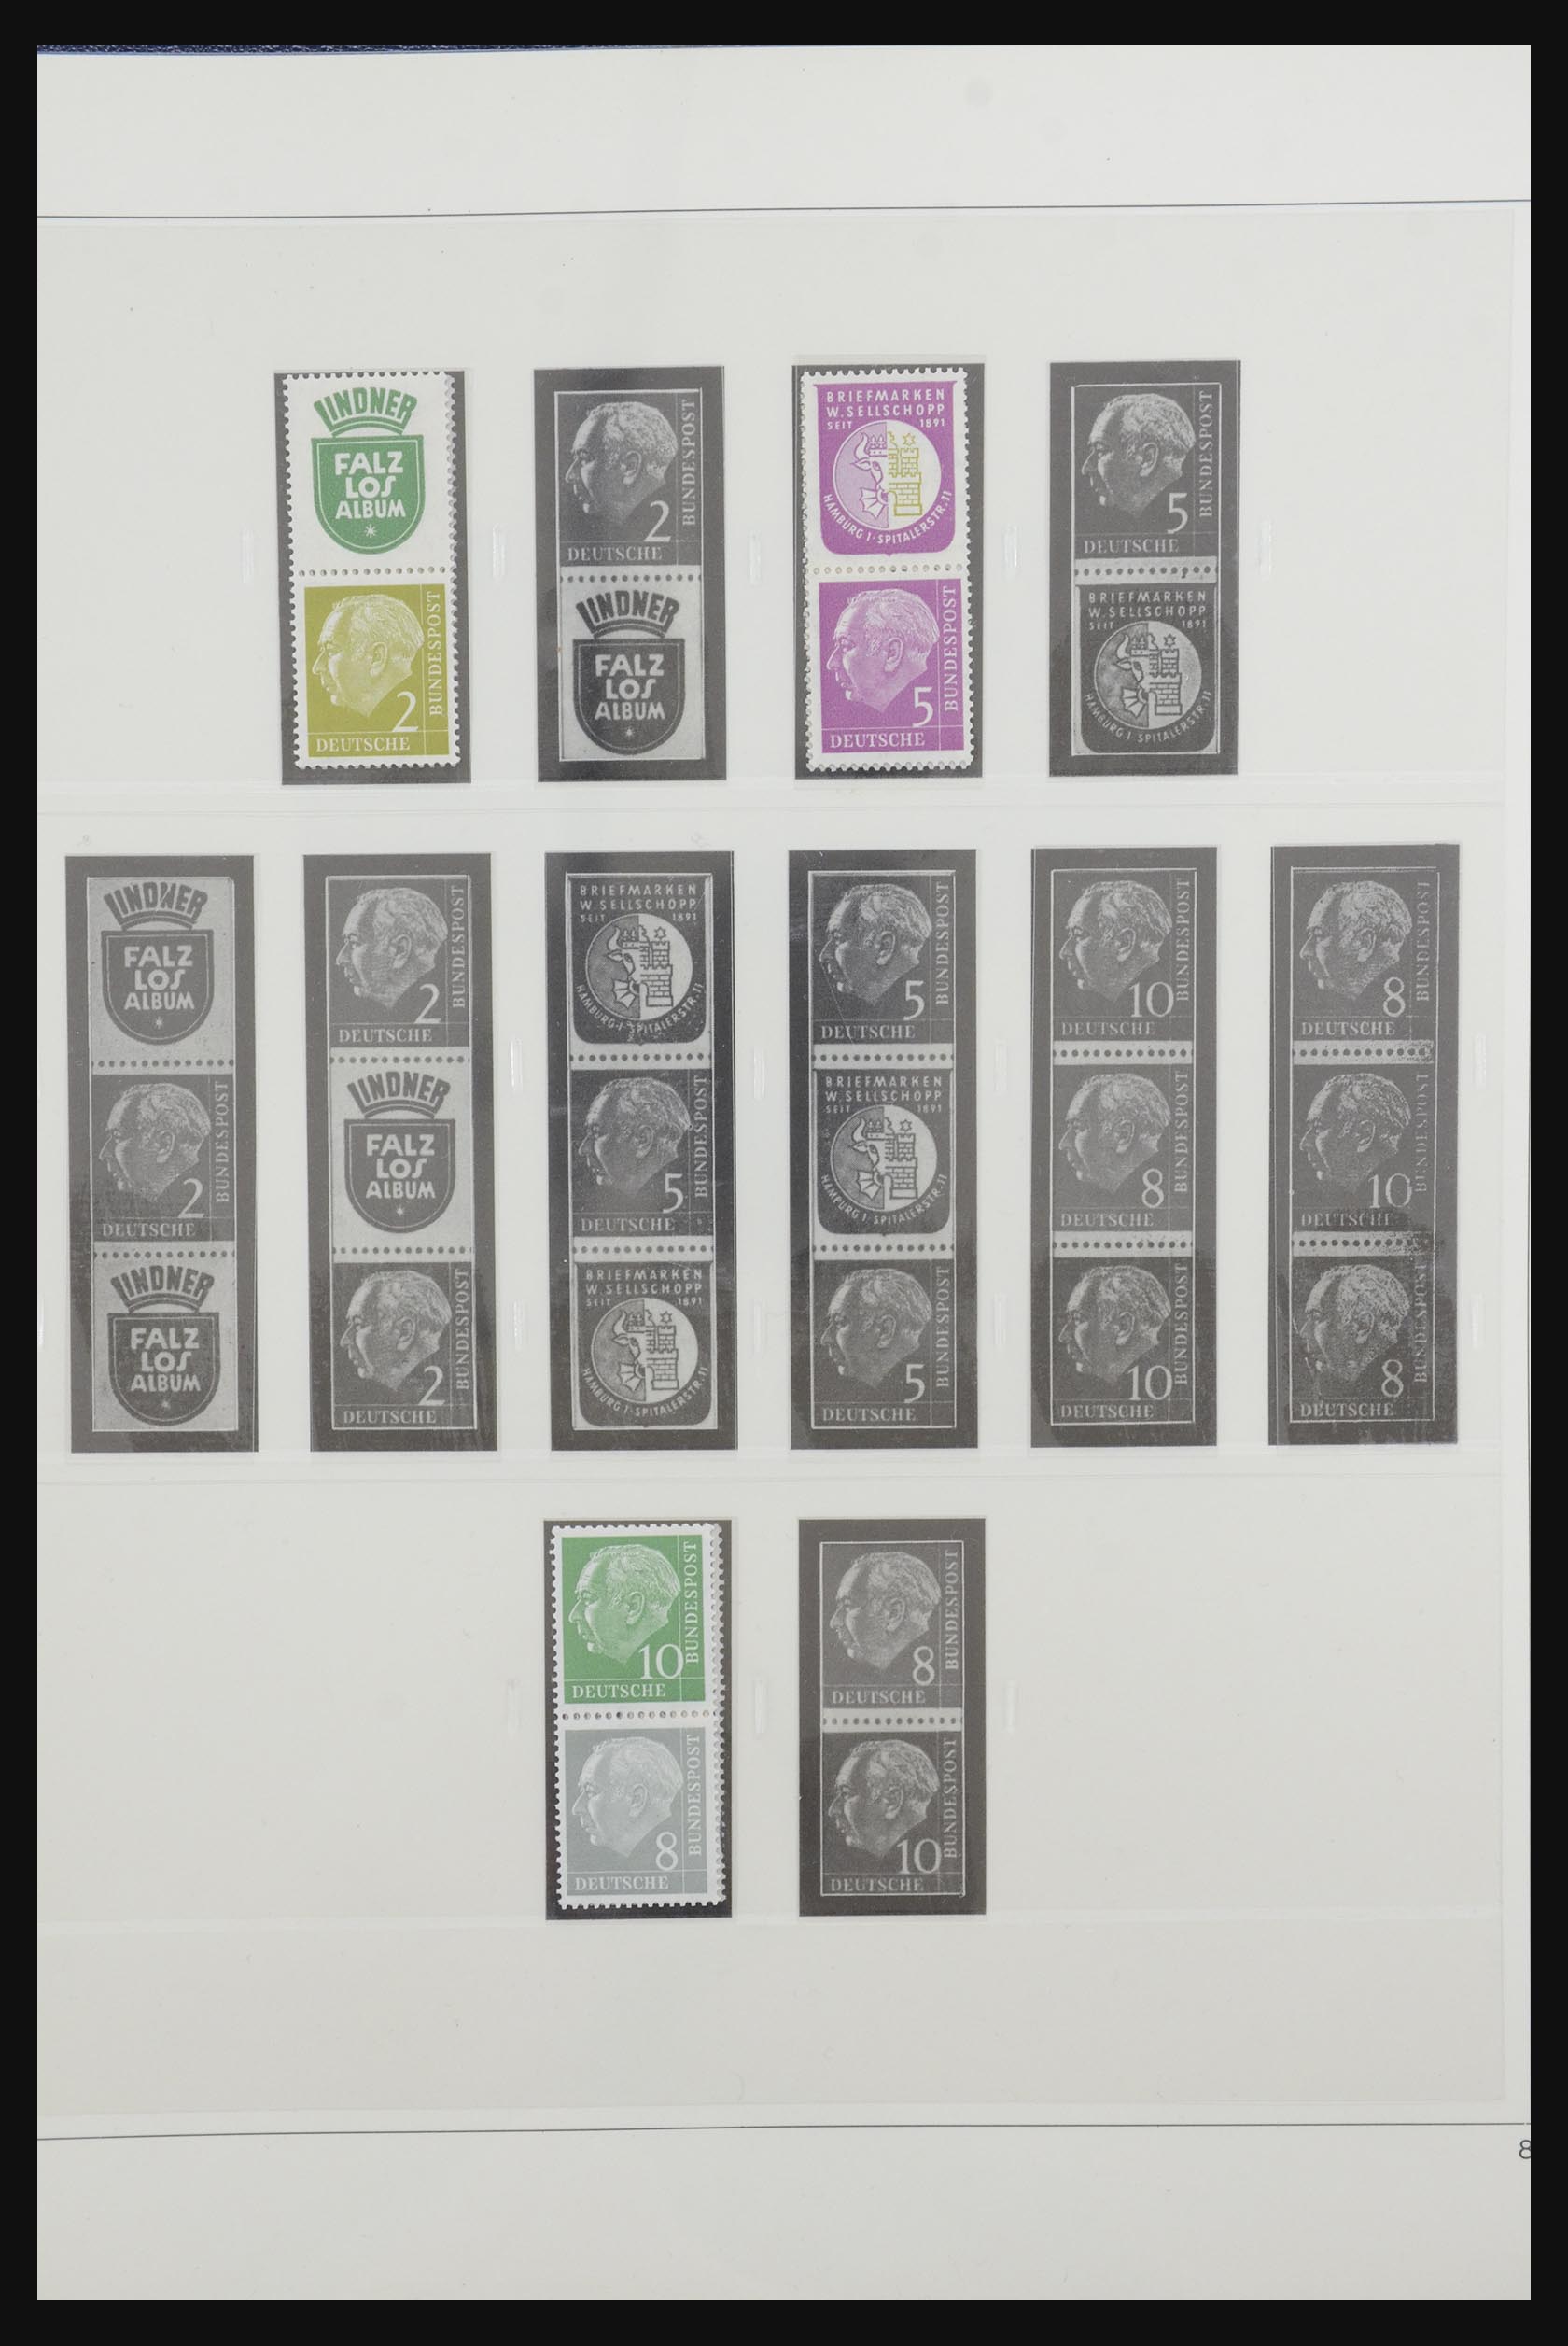 31842 010 - 31842 Bundespost combinaties 1951-2003.